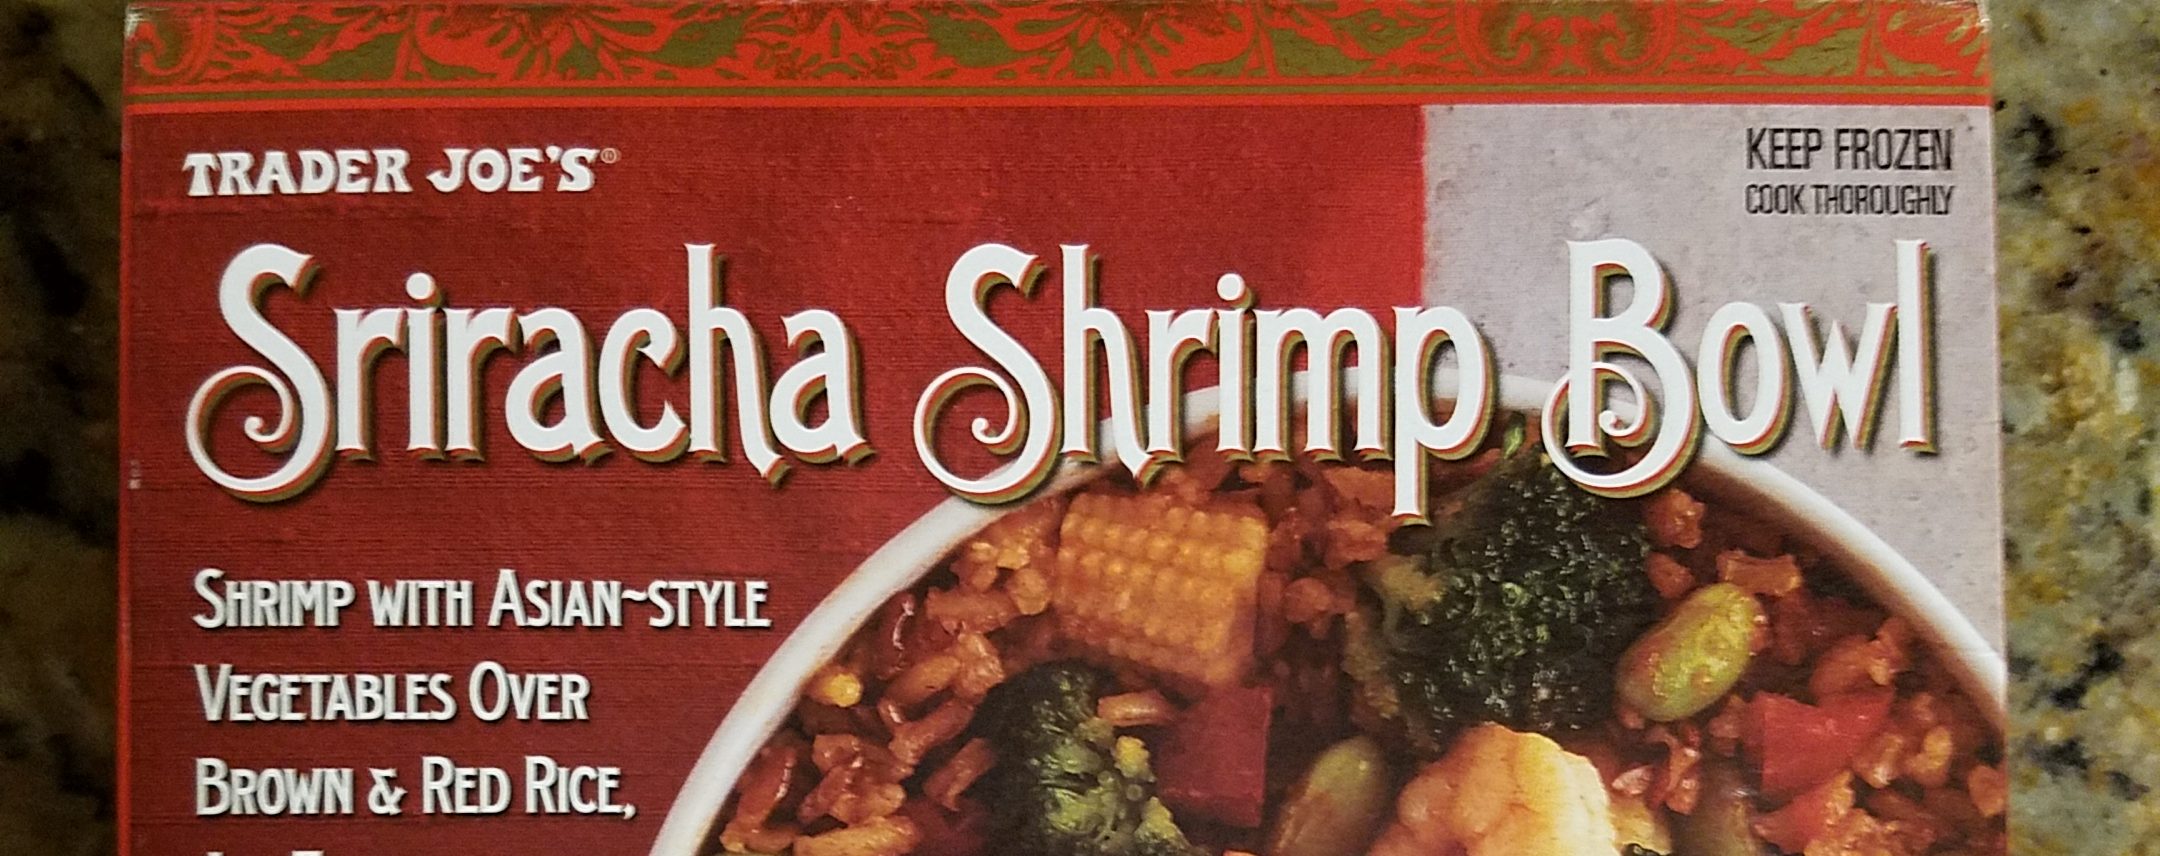 Everythingjoes.com | Trader Joe's Siracha Shrimp Bowl Review